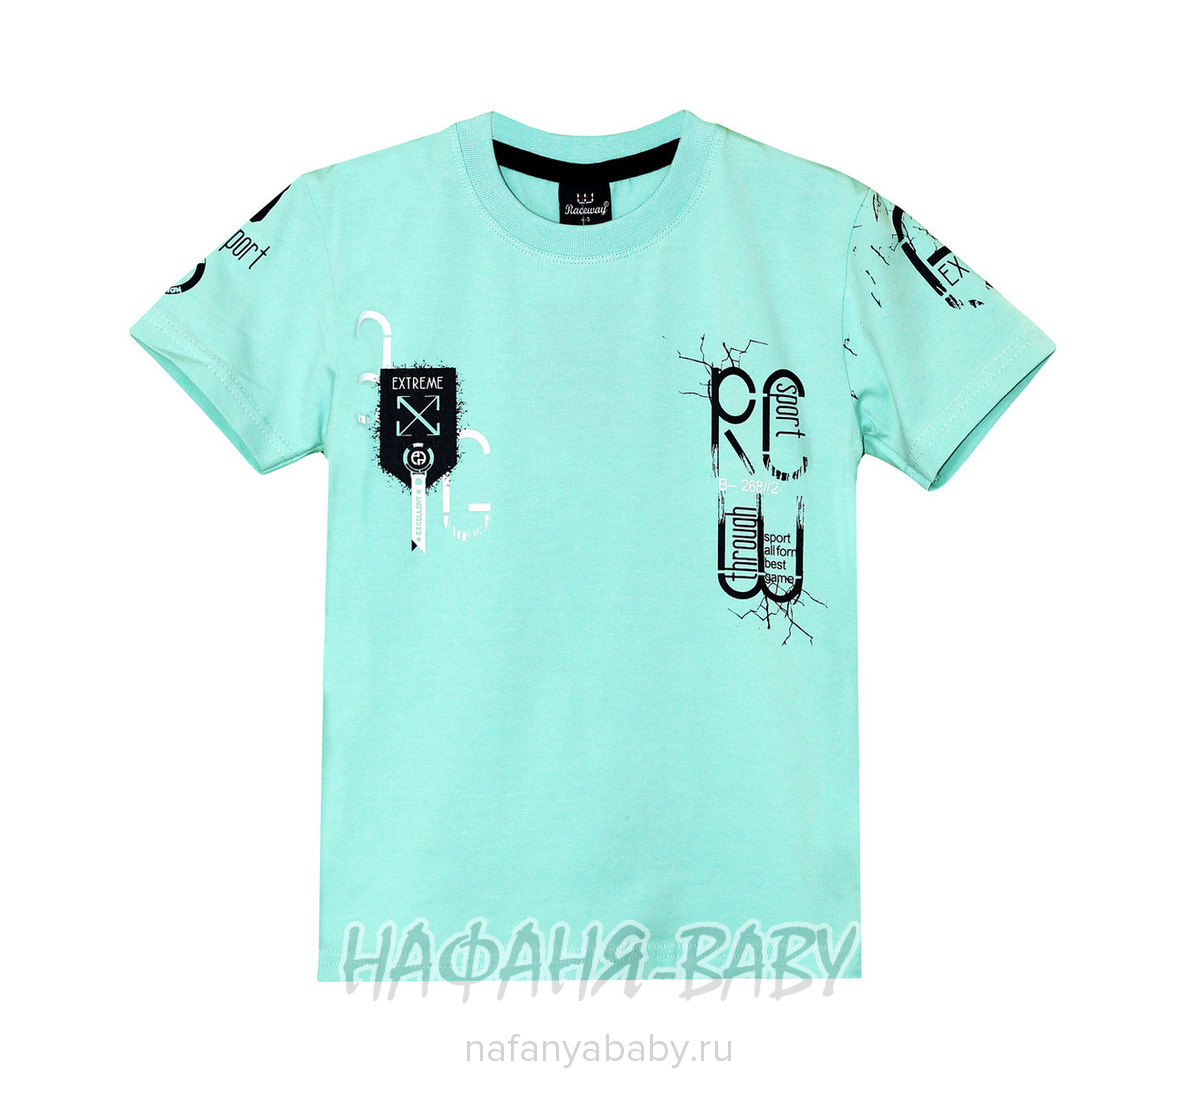 Детская футболка RCW, купить в интернет магазине Нафаня. арт: 5737.